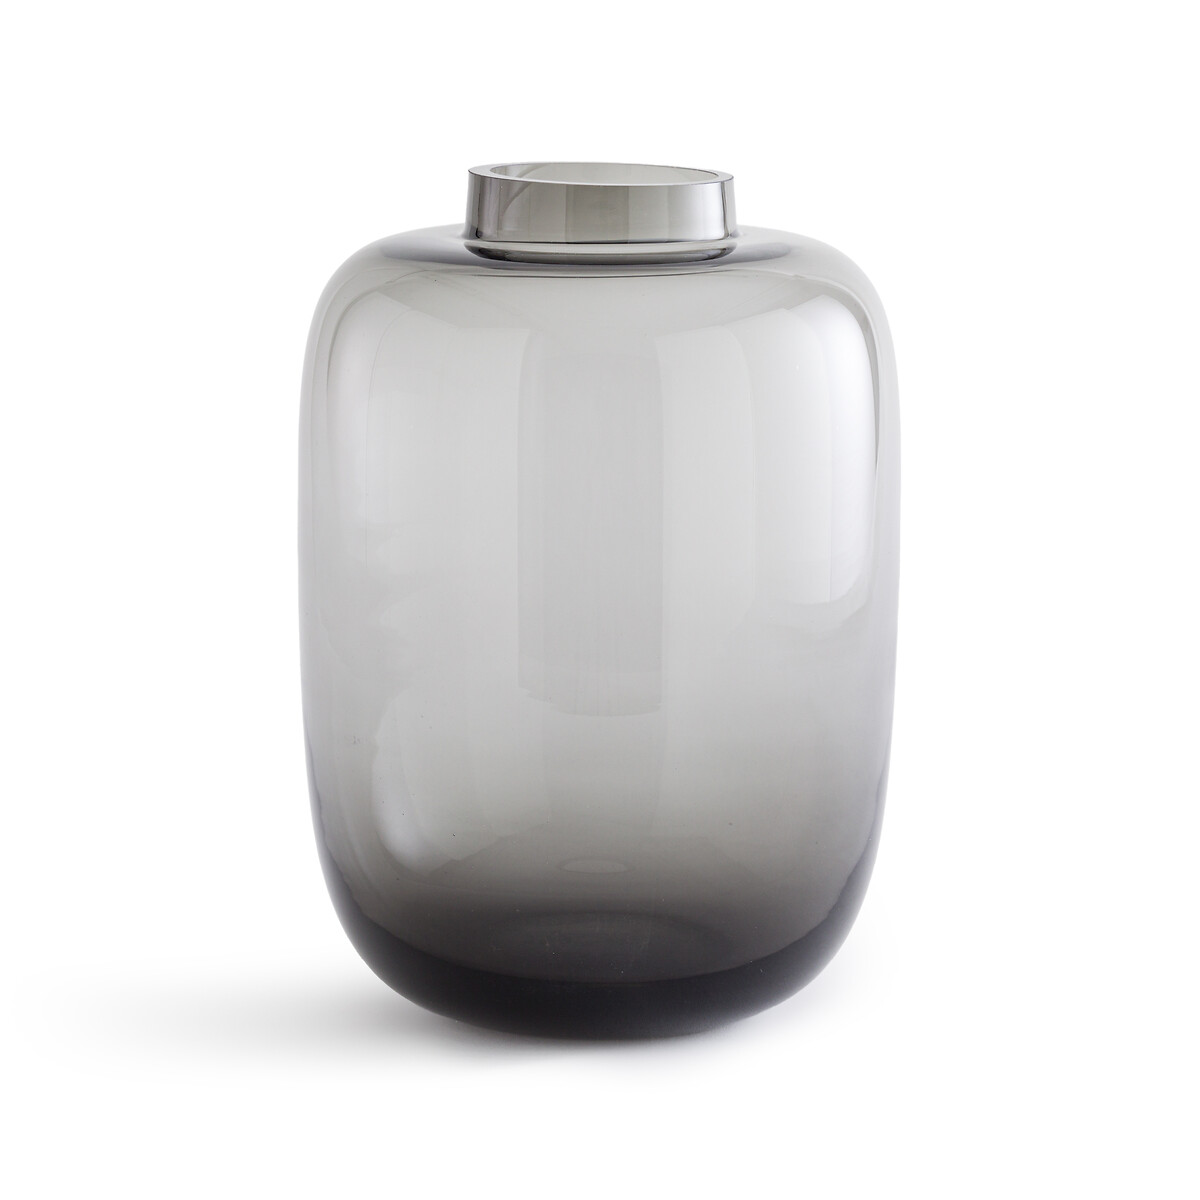 Ваза из цветного стекла Agata единый размер серый ваза из стекла в32 см tamagni единый размер серый